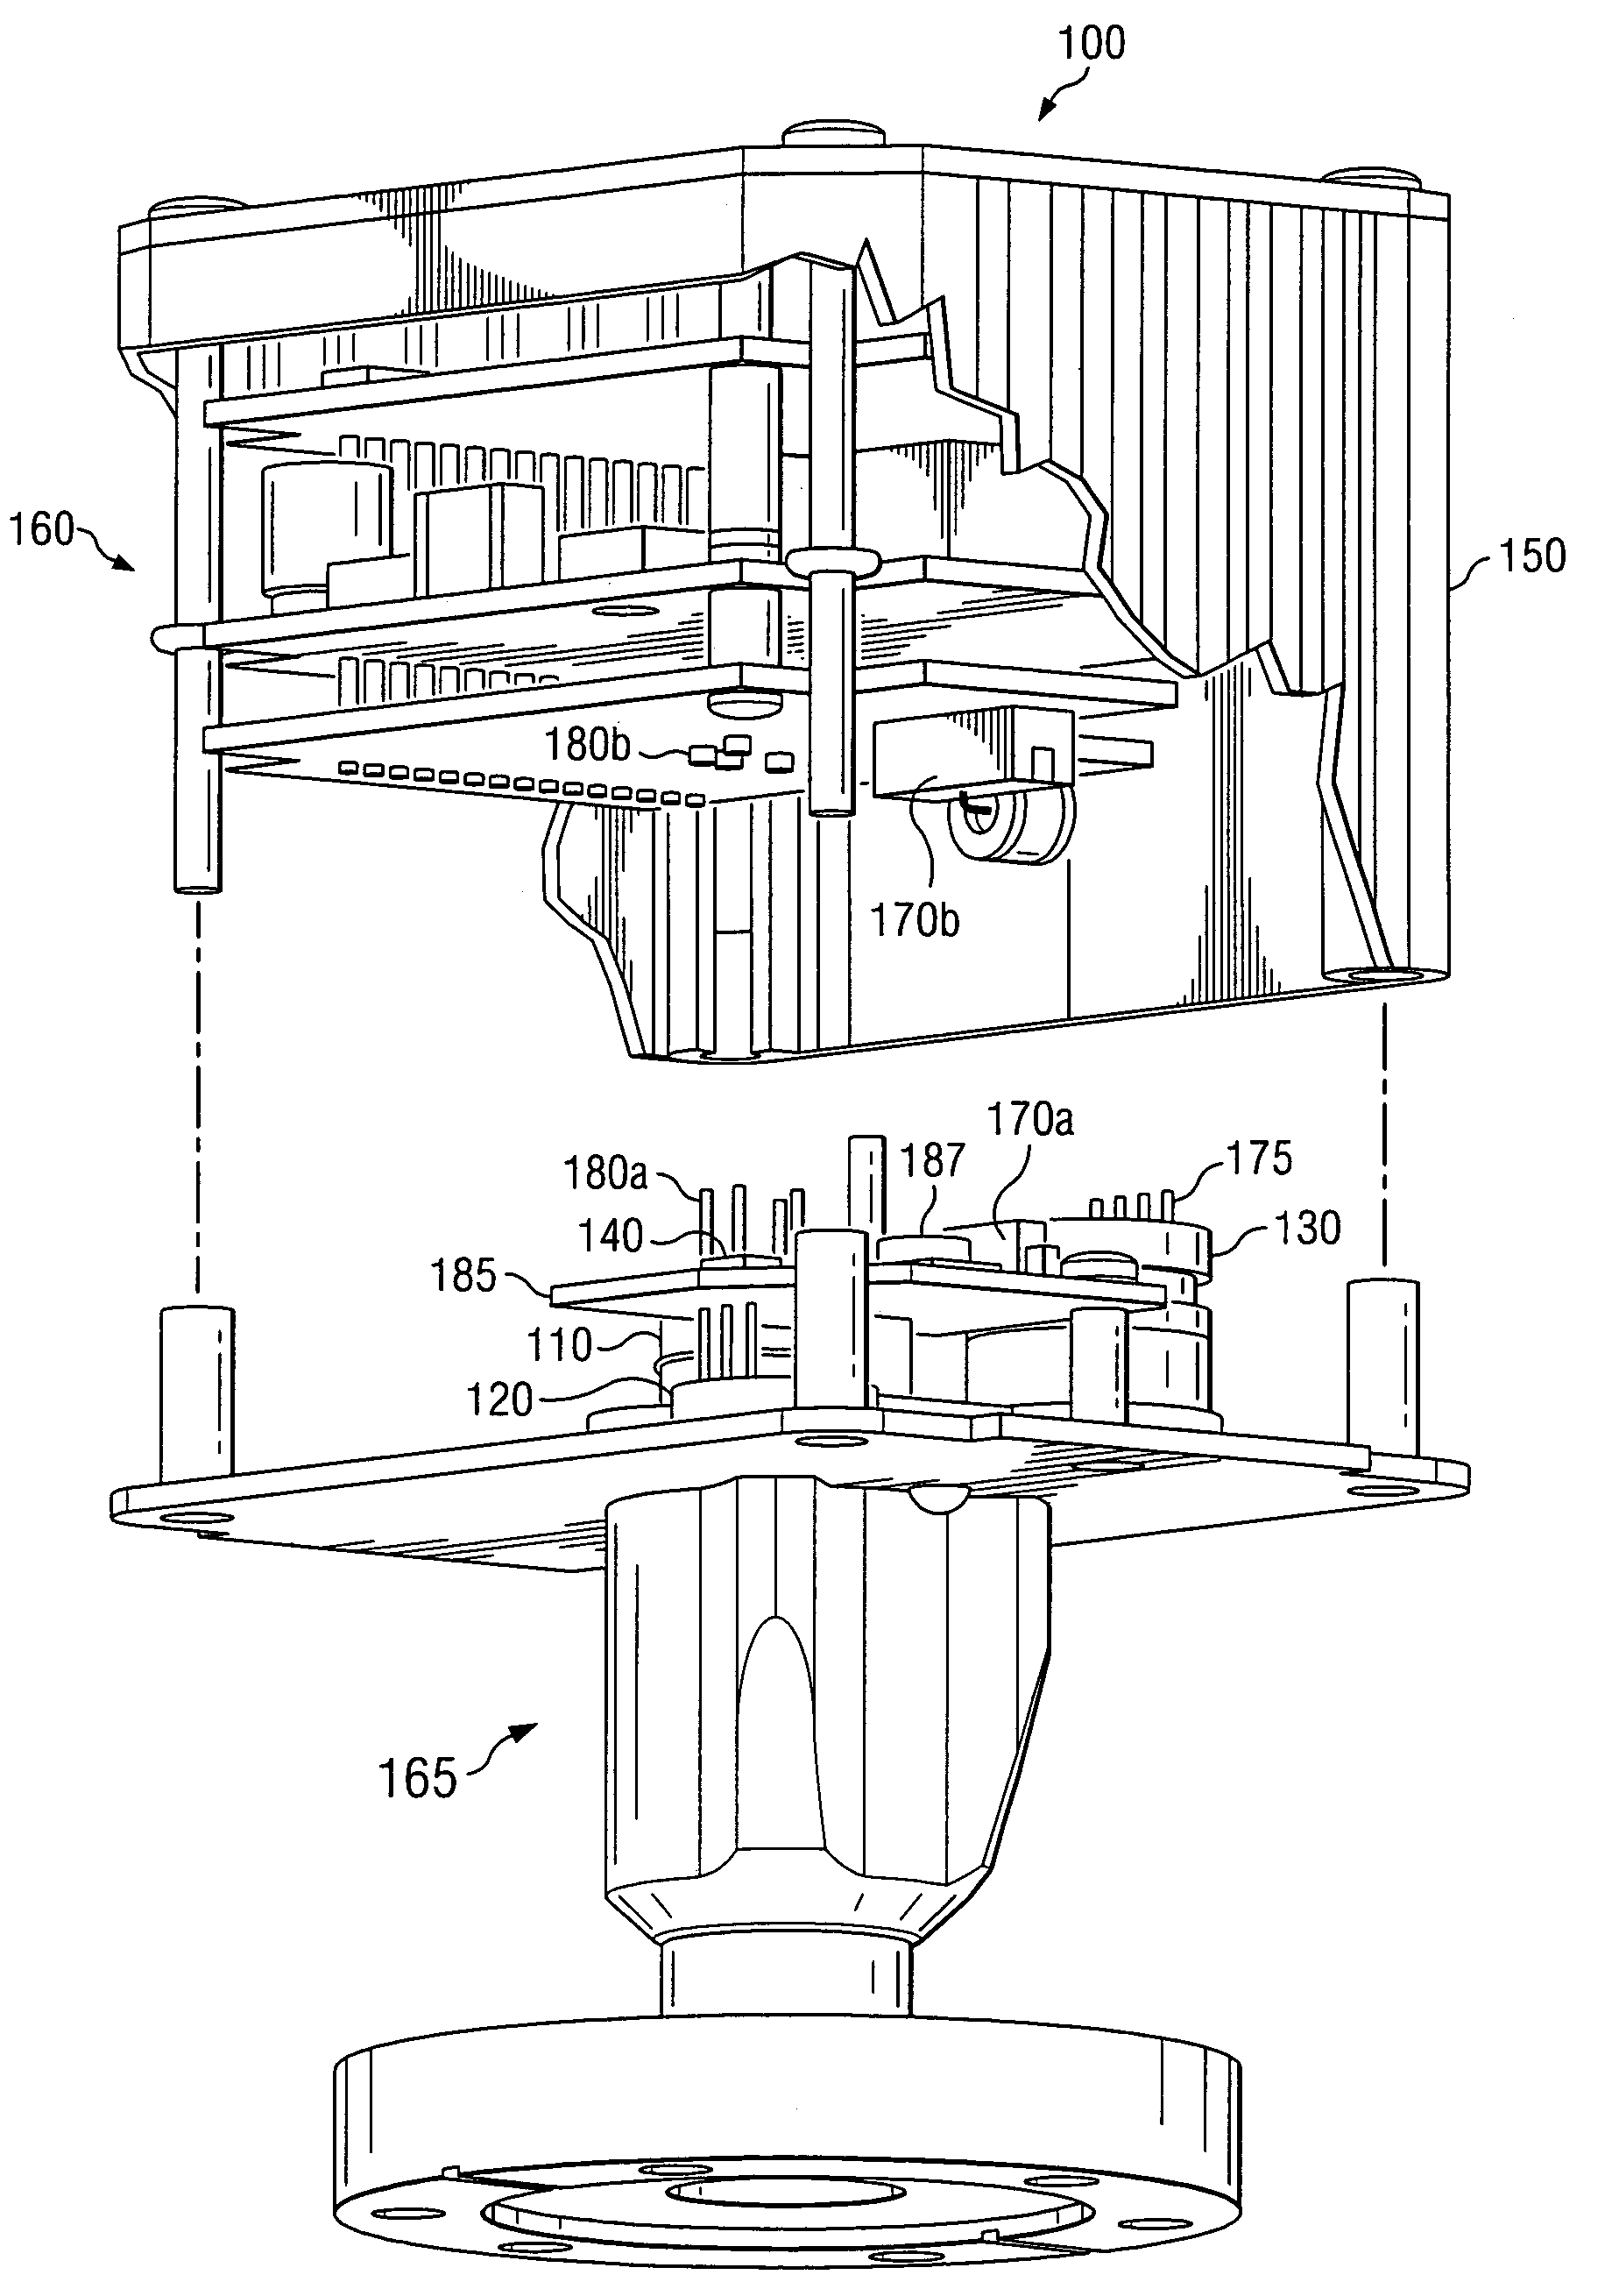 Wide-range combination vacuum gauge